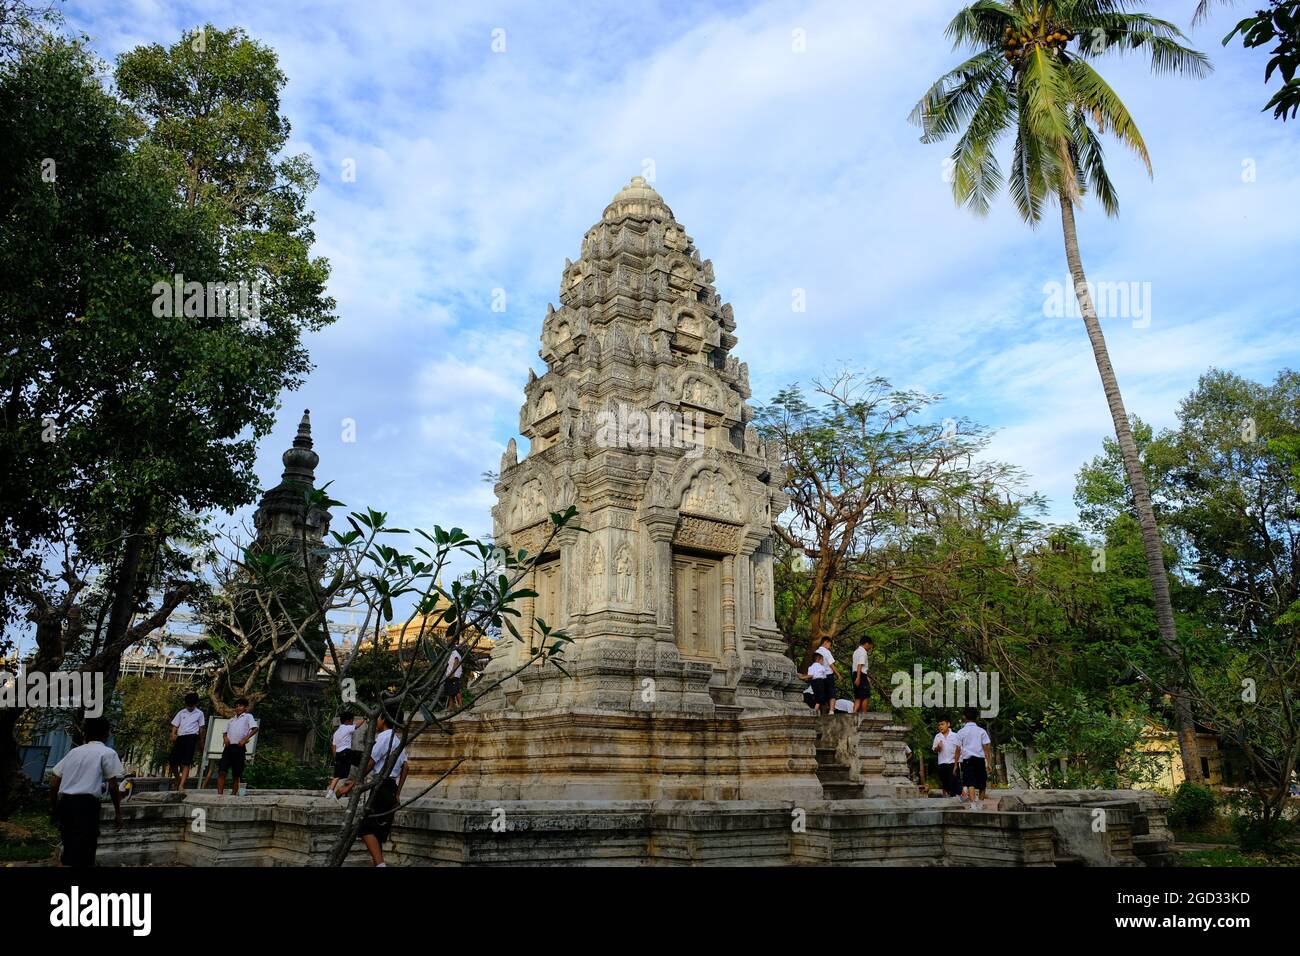 Cambodia Krong Siem Reap - Wat Damnak Prang tower in garden area Stock Photo